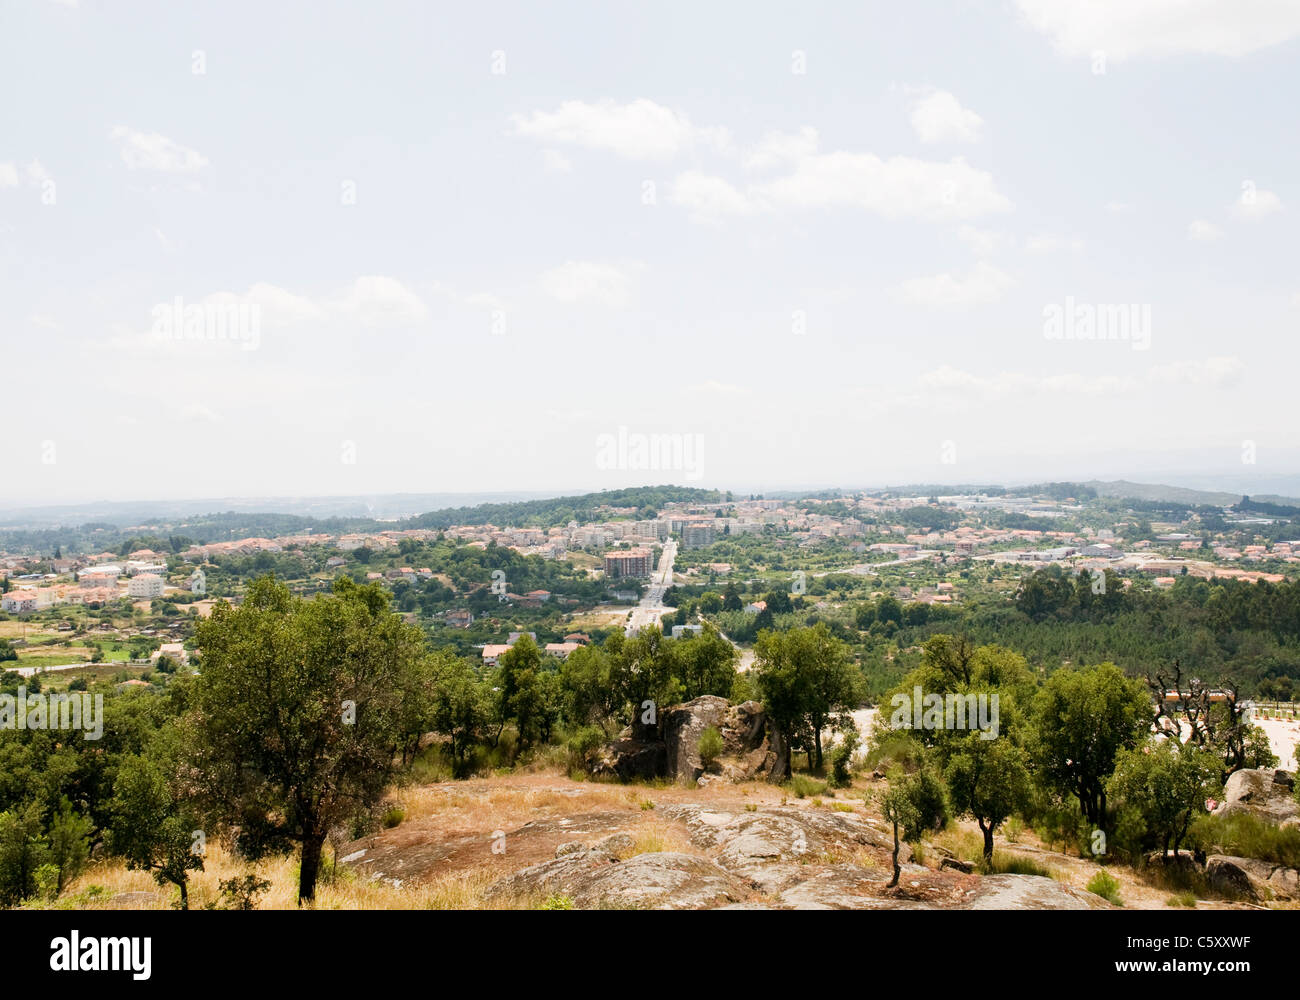 Une vue générale de Mangualde, une petite ville dans la région de la vallée de Dão du nord du Portugal Banque D'Images